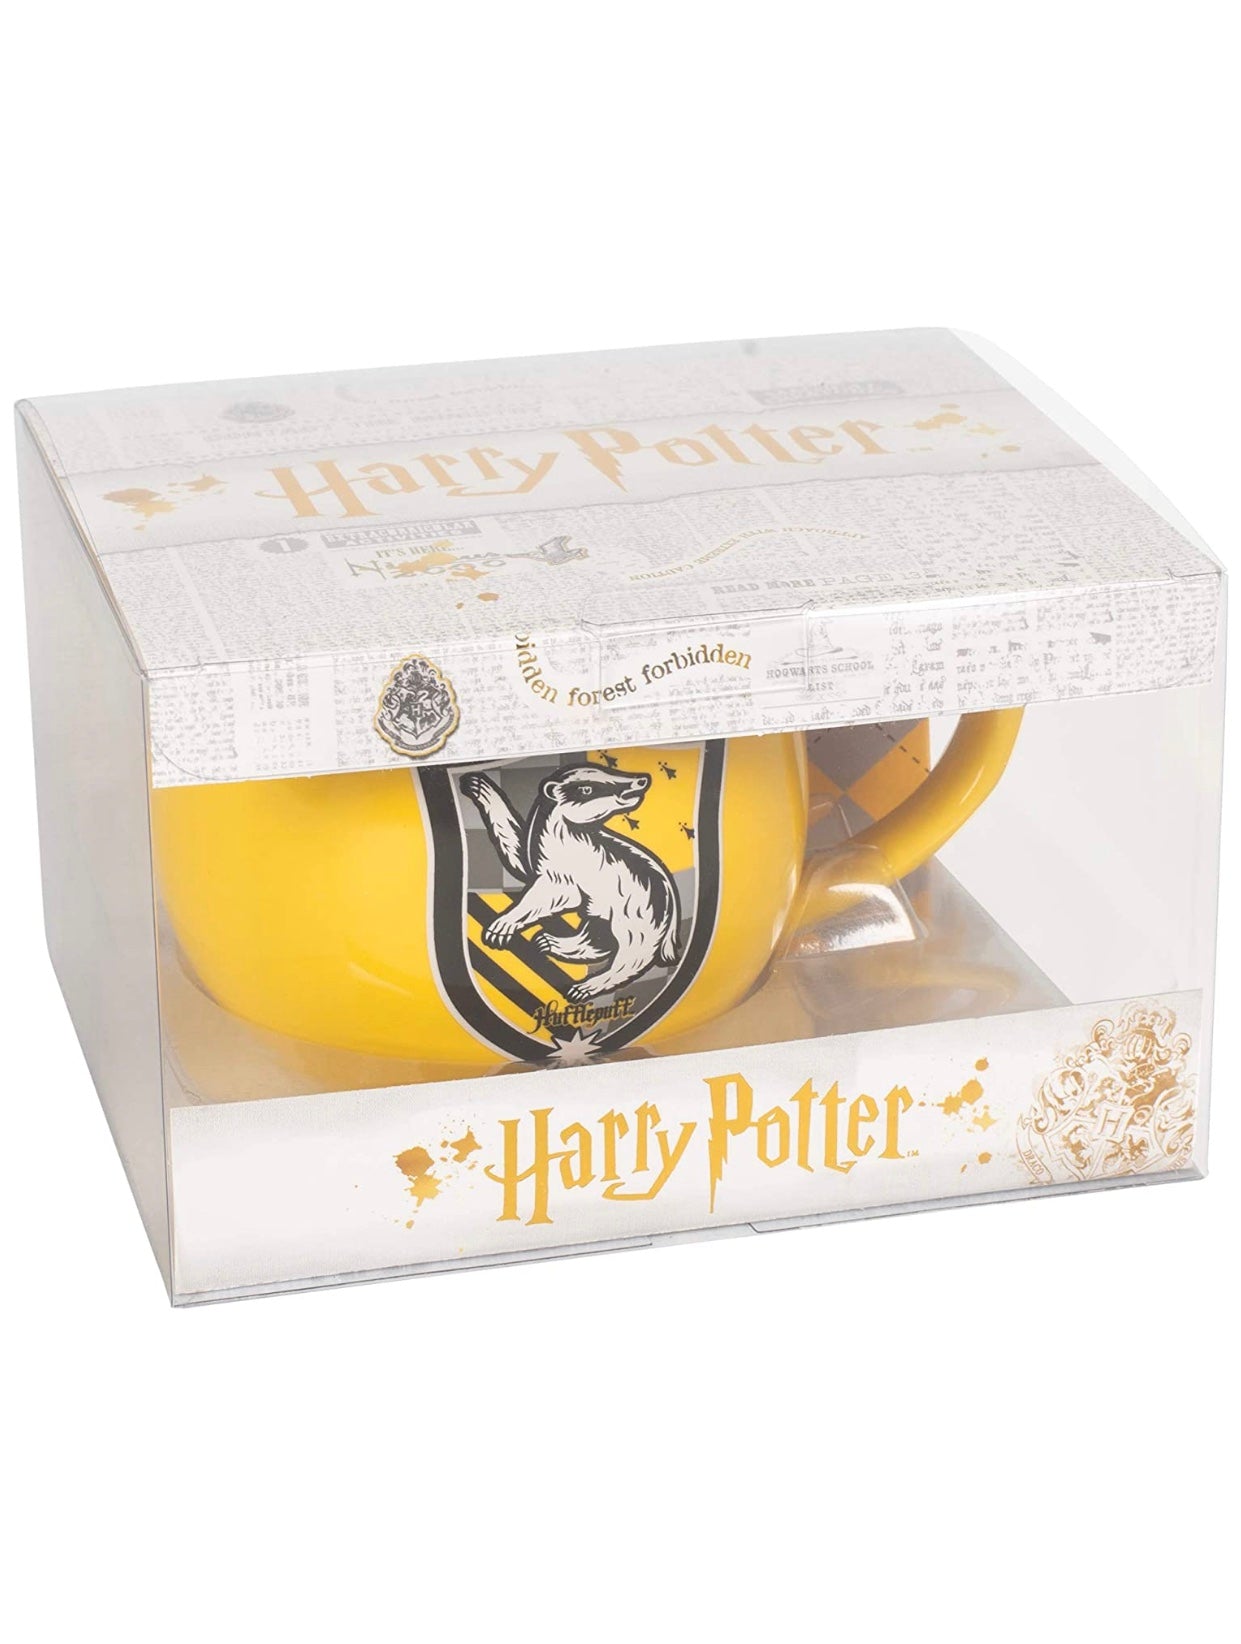 Harry Potter Hufflepuff Crest Mug Coaster